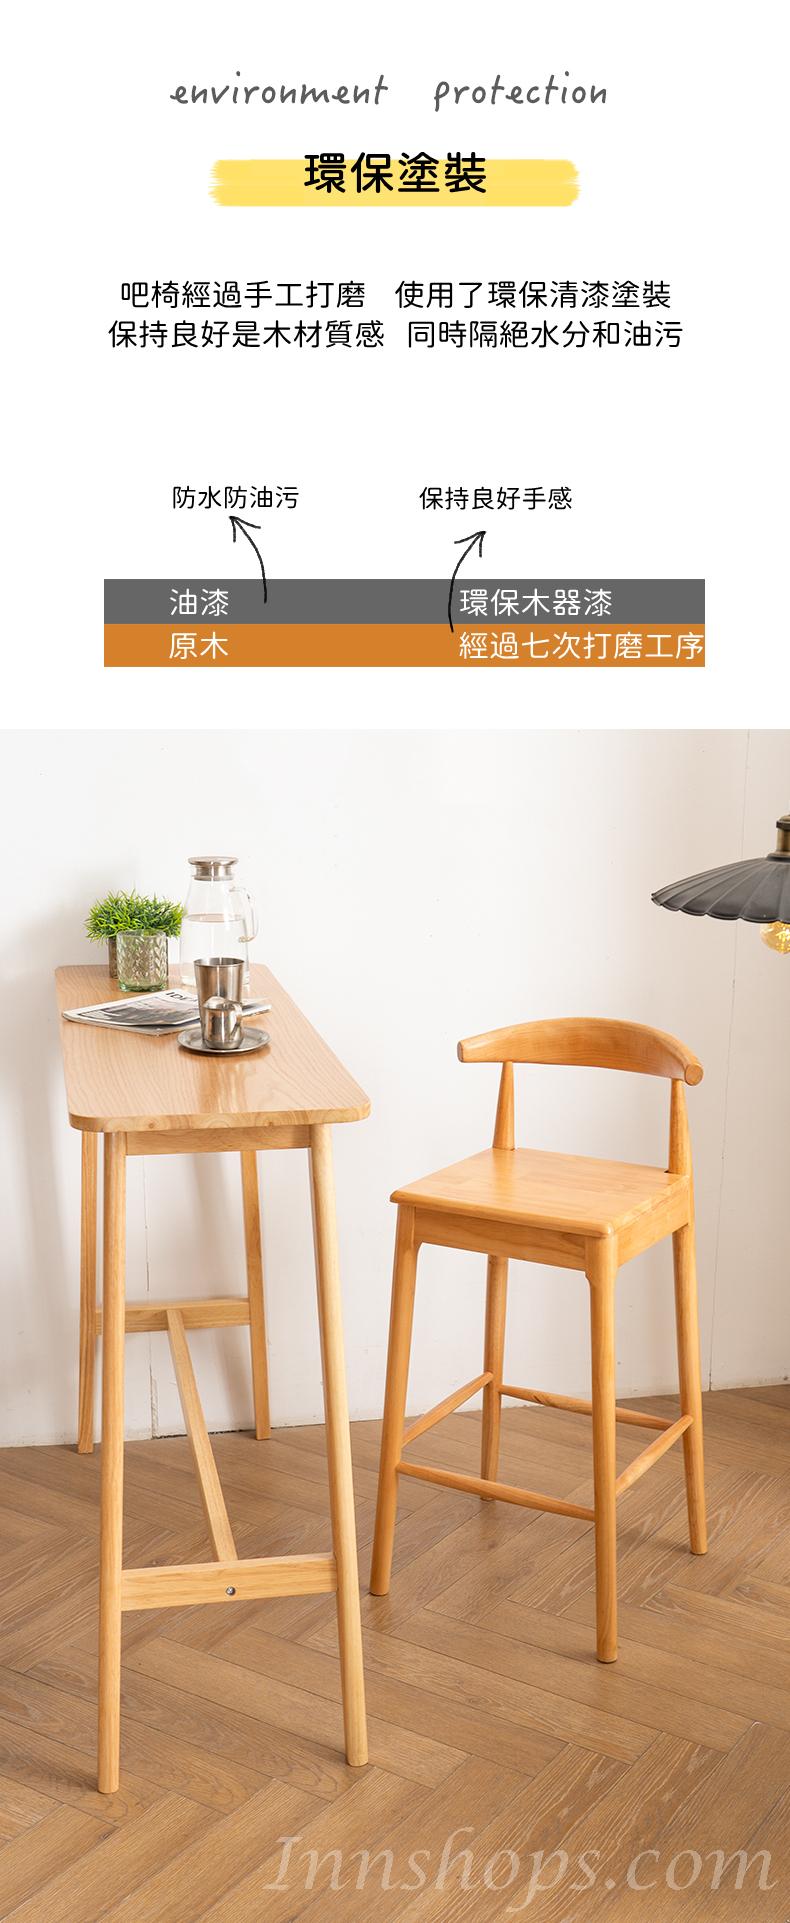 日式實木橡木系列 高腳吧椅 吧凳 75cm(IS8325)